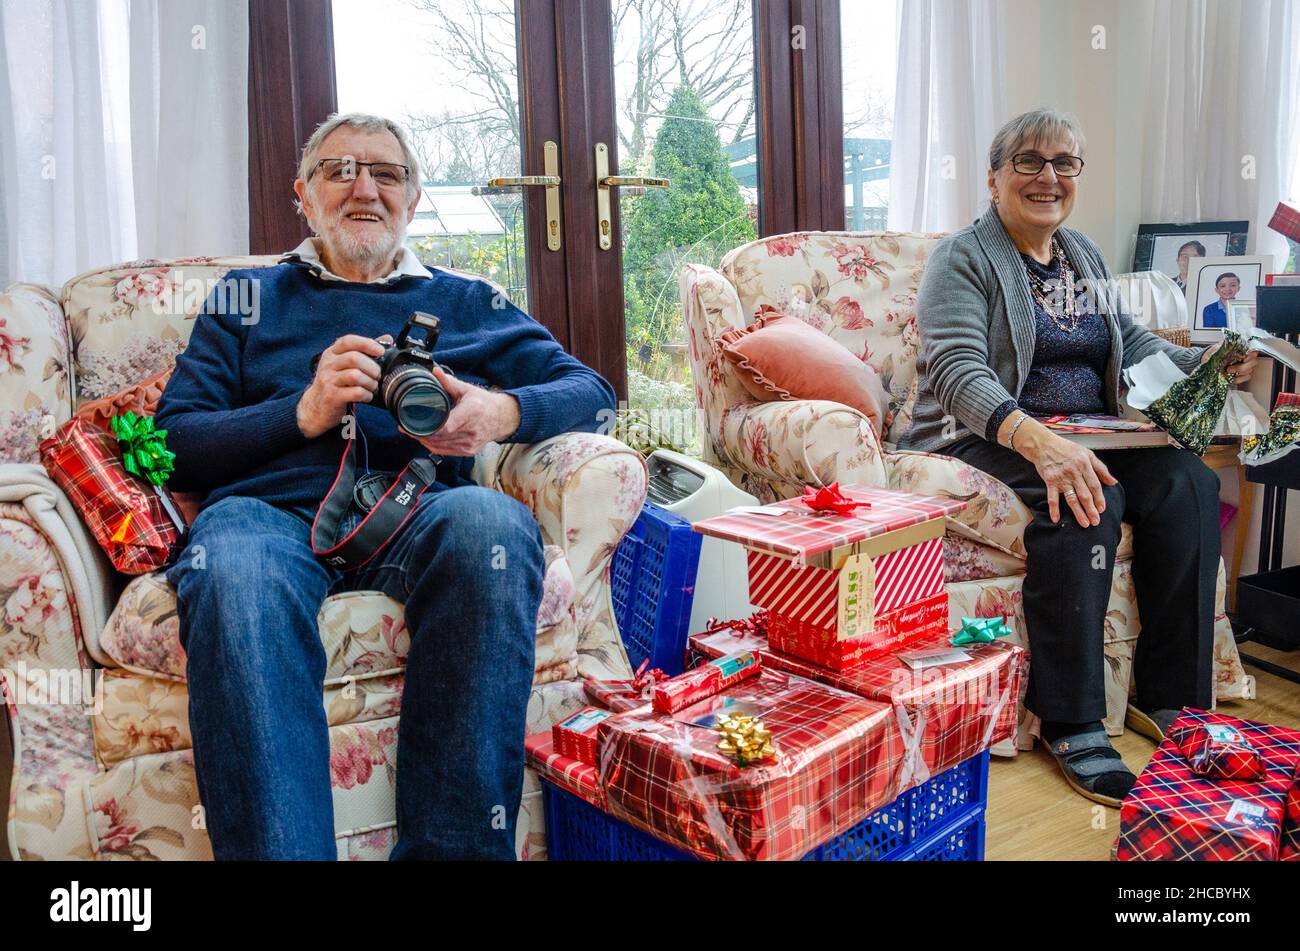 Ein Rentnerpaar sitzt am Weihnachtsmorgen in Sesseln mit Geschenken zum Öffnen, aber schaut glücklich zu, wie die Familie unsere von geschossenen offenen Geschenken zuerst schaut. Stockfoto